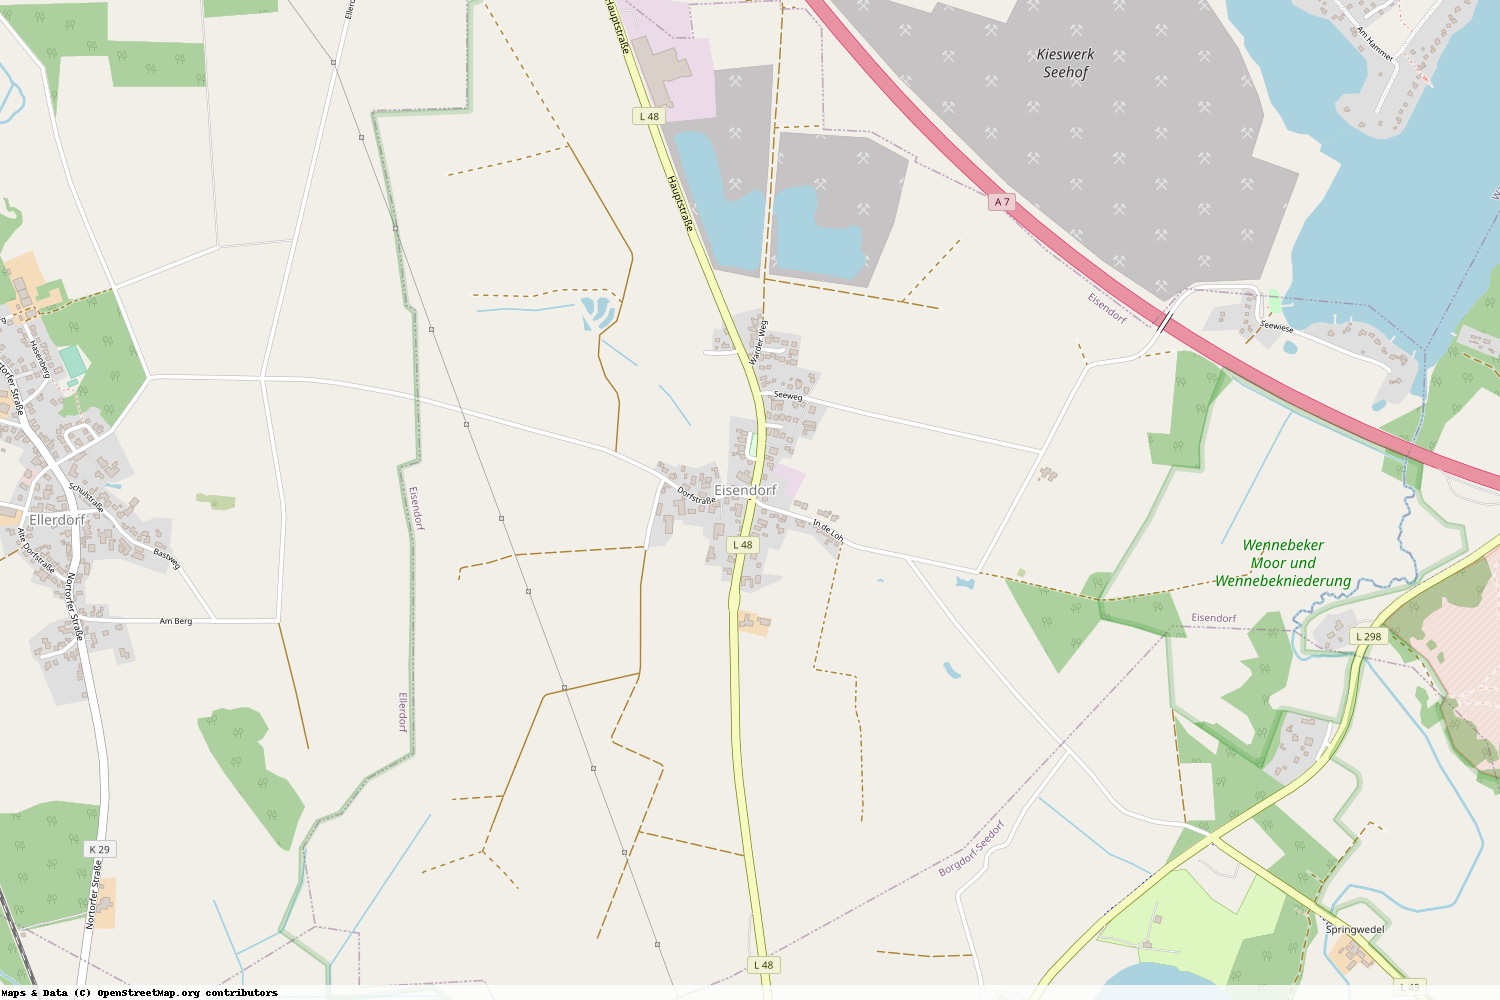 Ist gerade Stromausfall in Schleswig-Holstein - Rendsburg-Eckernförde - Eisendorf?